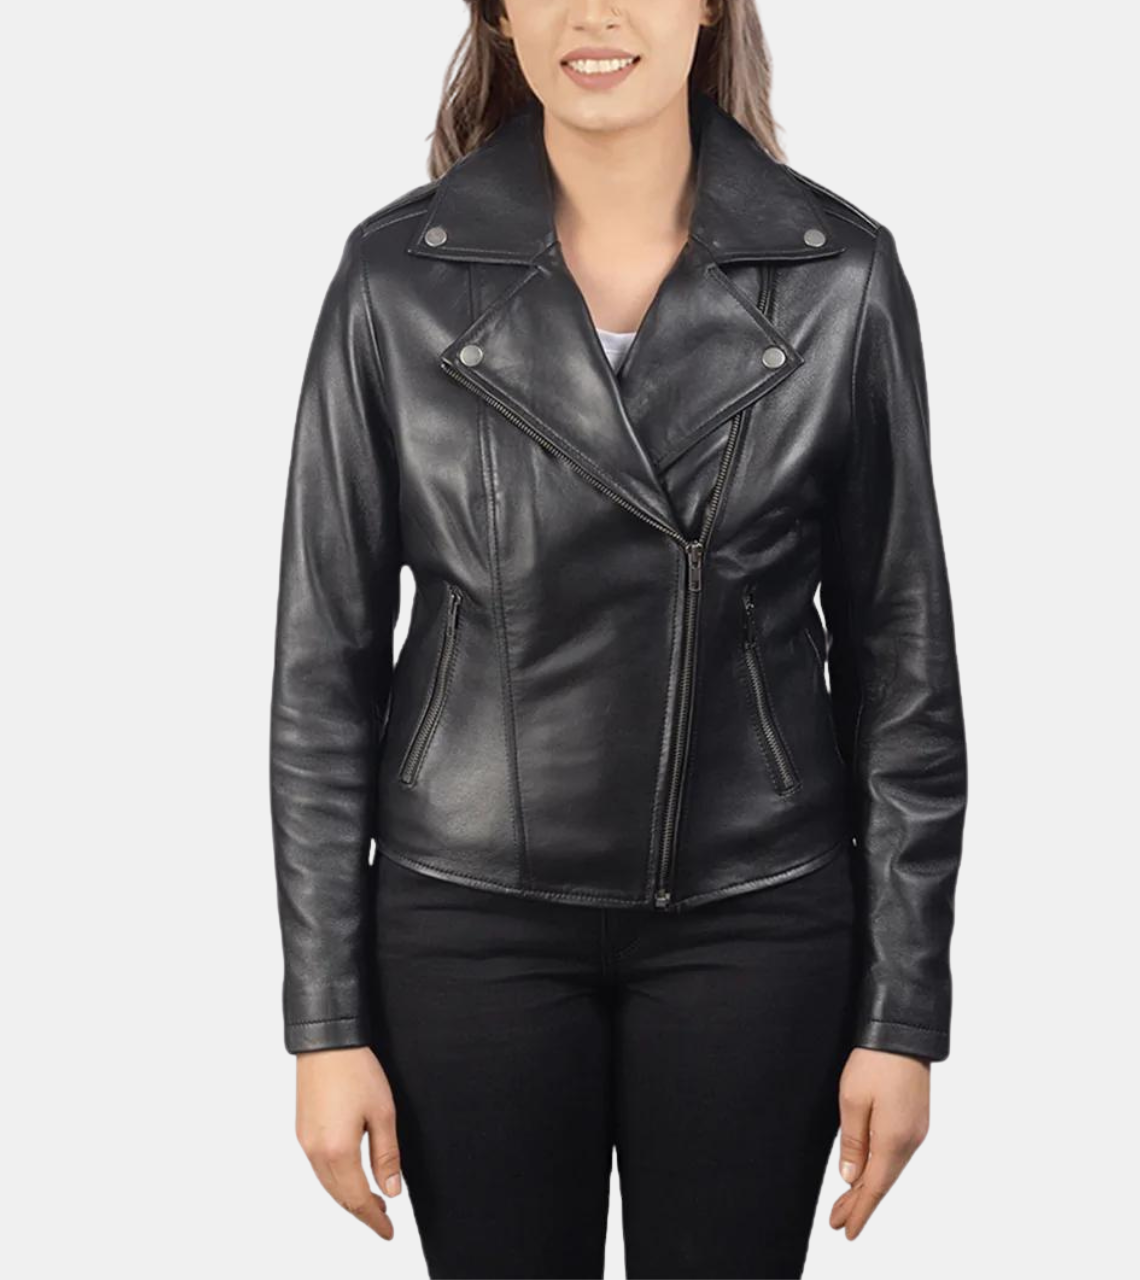 Women's Black Biker's Leather Jacket